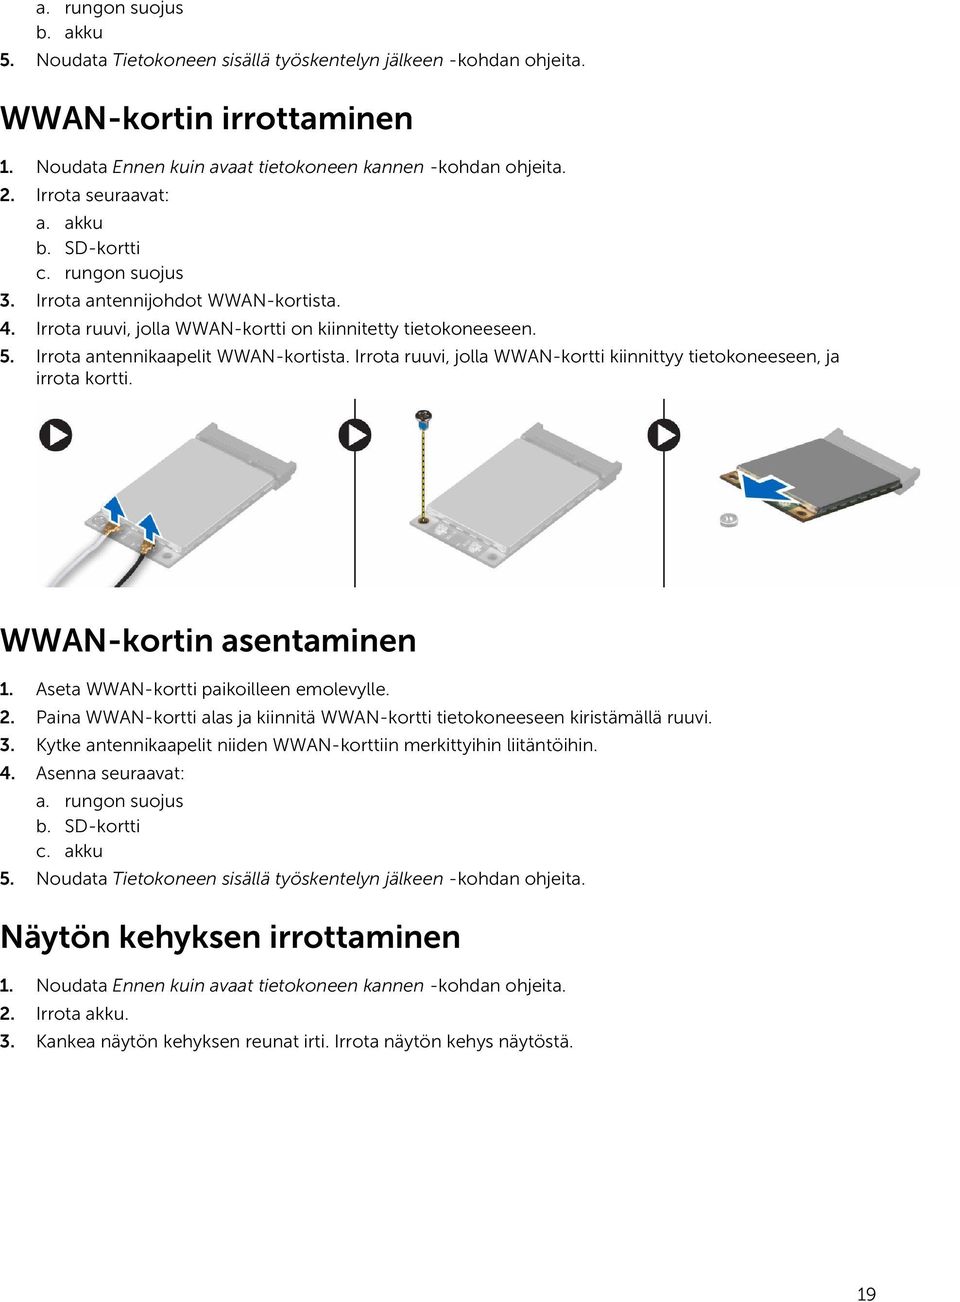 Irrota antennikaapelit WWAN-kortista. Irrota ruuvi, jolla WWAN-kortti kiinnittyy tietokoneeseen, ja irrota kortti. WWAN-kortin asentaminen 1. Aseta WWAN-kortti paikoilleen emolevylle. 2.